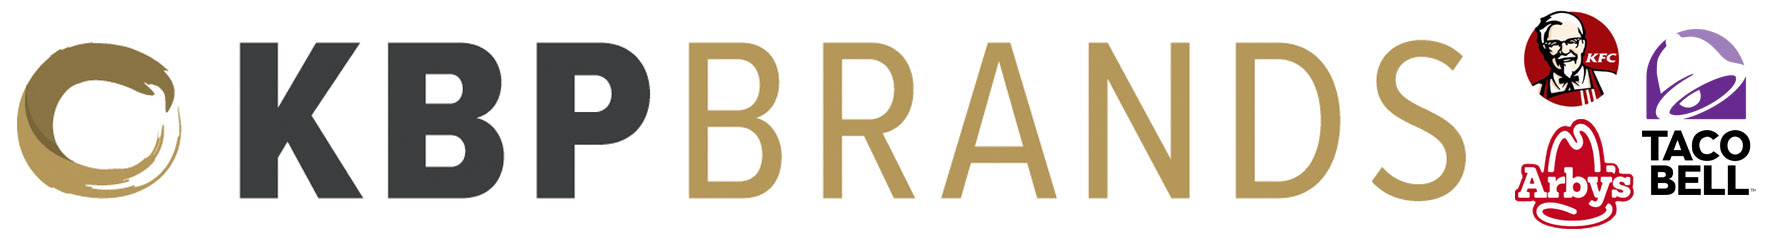 KBP Brands Company Logo